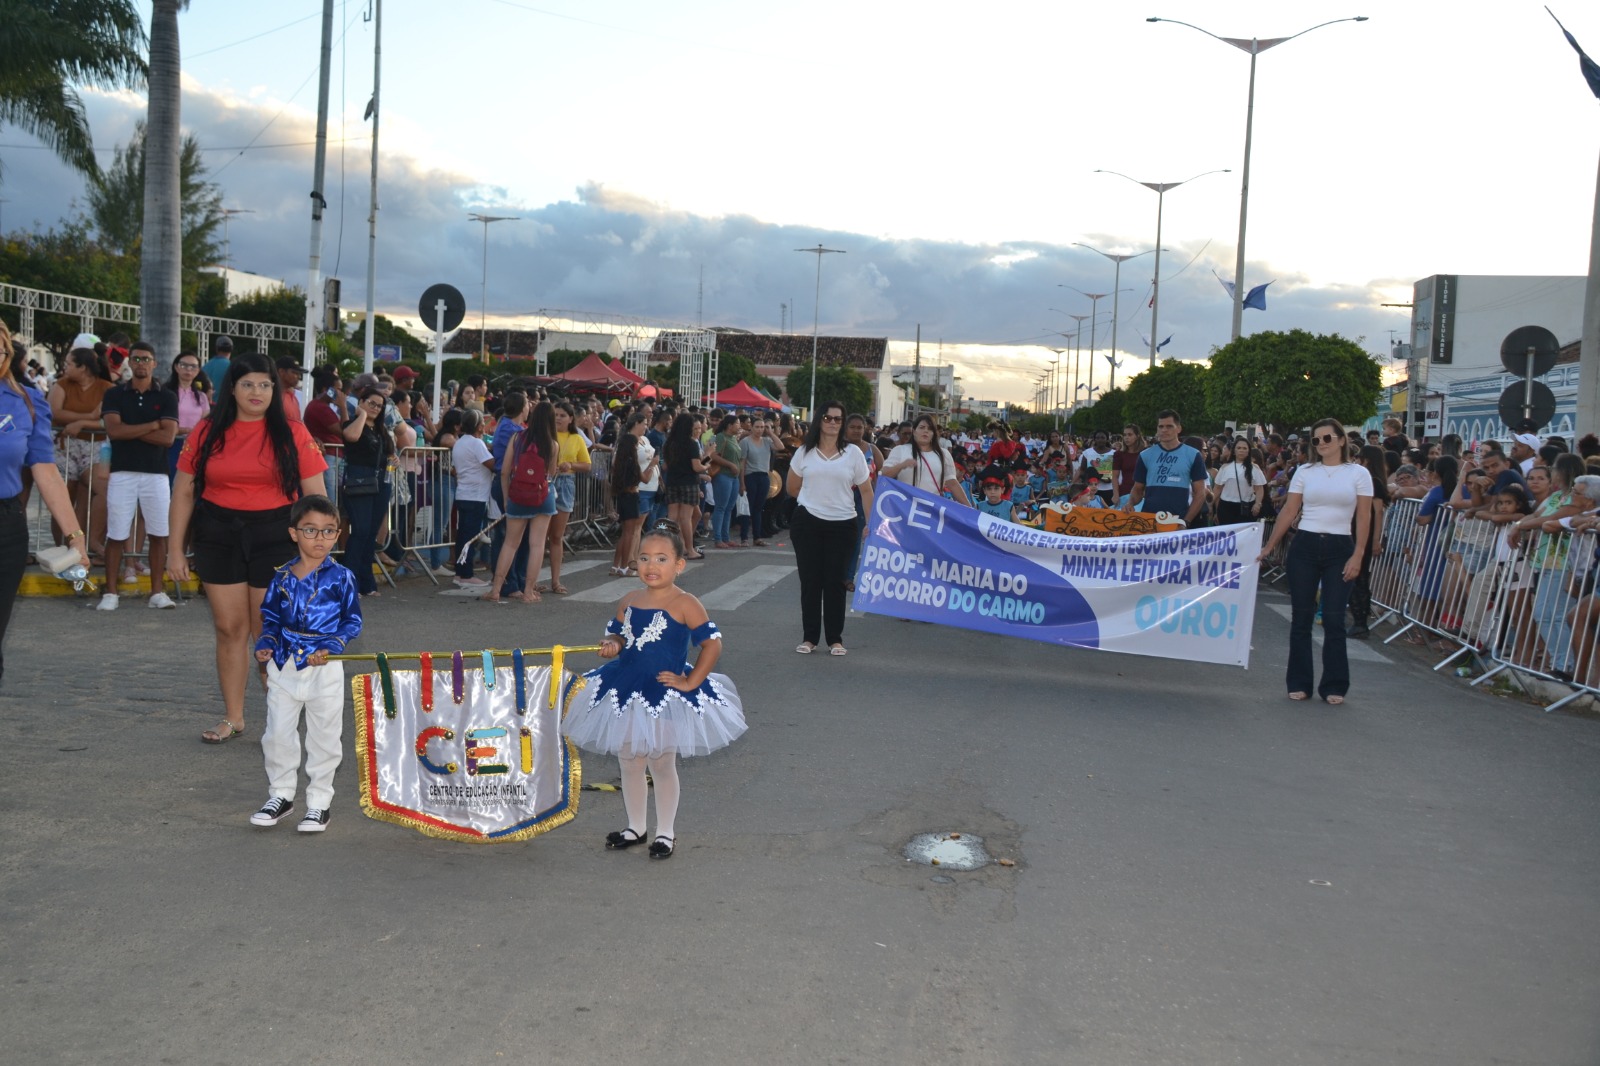 Desfiles-Civicos-em-Monteiro-acontecem-com-grande-presenca-de-publico-e-autoridades-7 Desfiles Cívicos em Monteiro acontecem com grande presença de público e autoridades